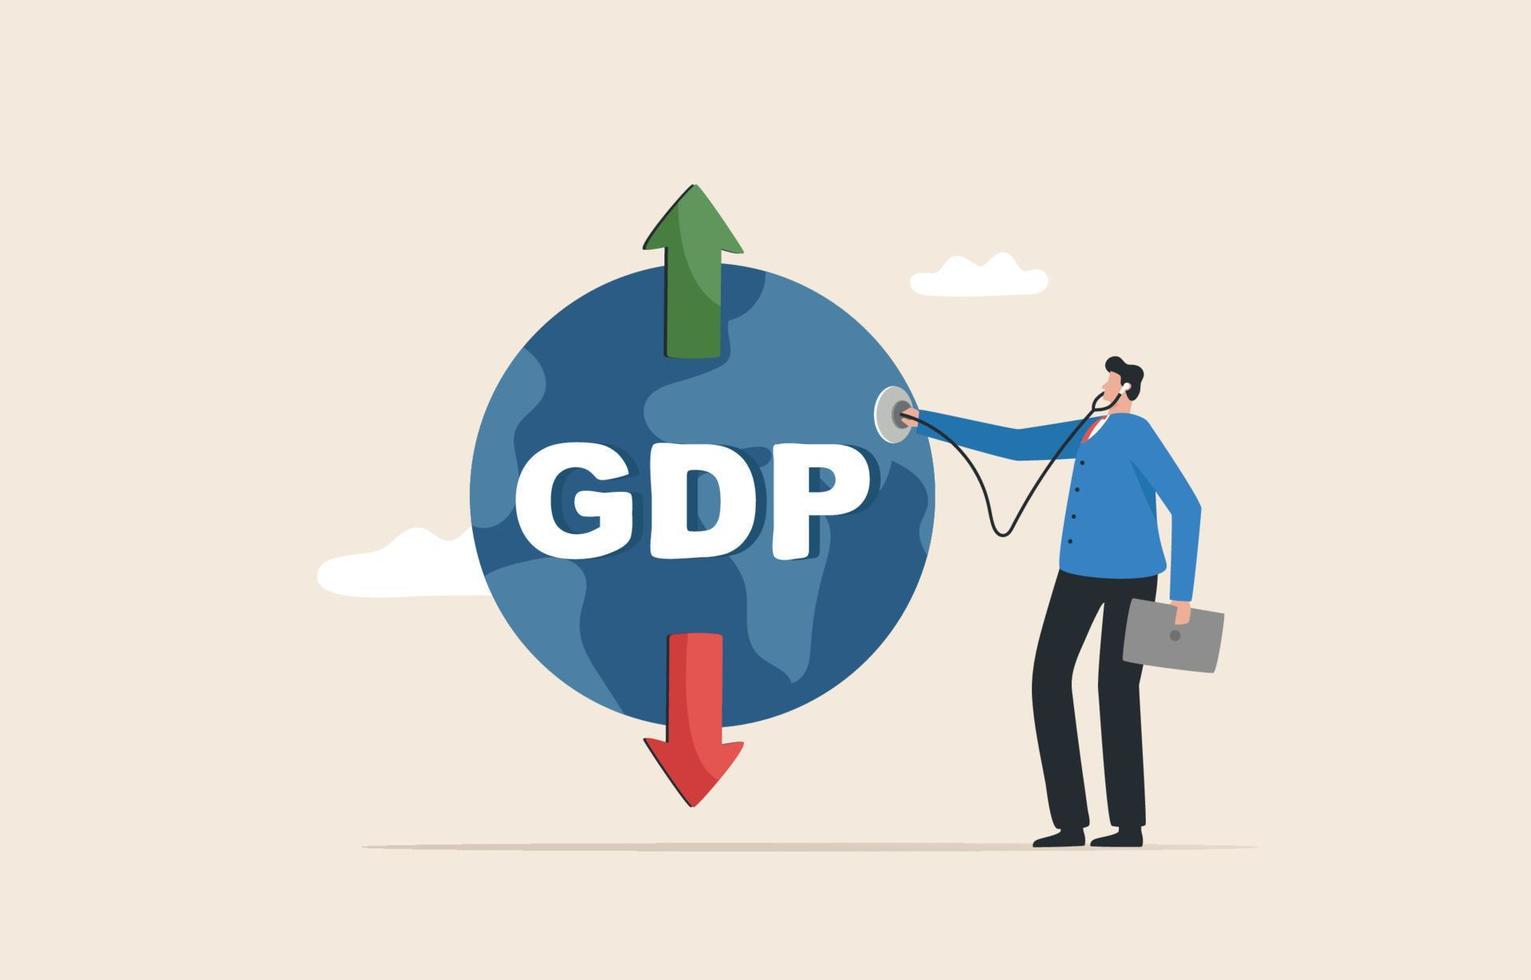 bruto huiselijk Product of bbp. controleren economisch indicatoren van elk land. beoordelen de economie van globaal, per kwartaal, jaarlijks. zakenman met een stethoscoop onderzoeken de wereld economie. vector